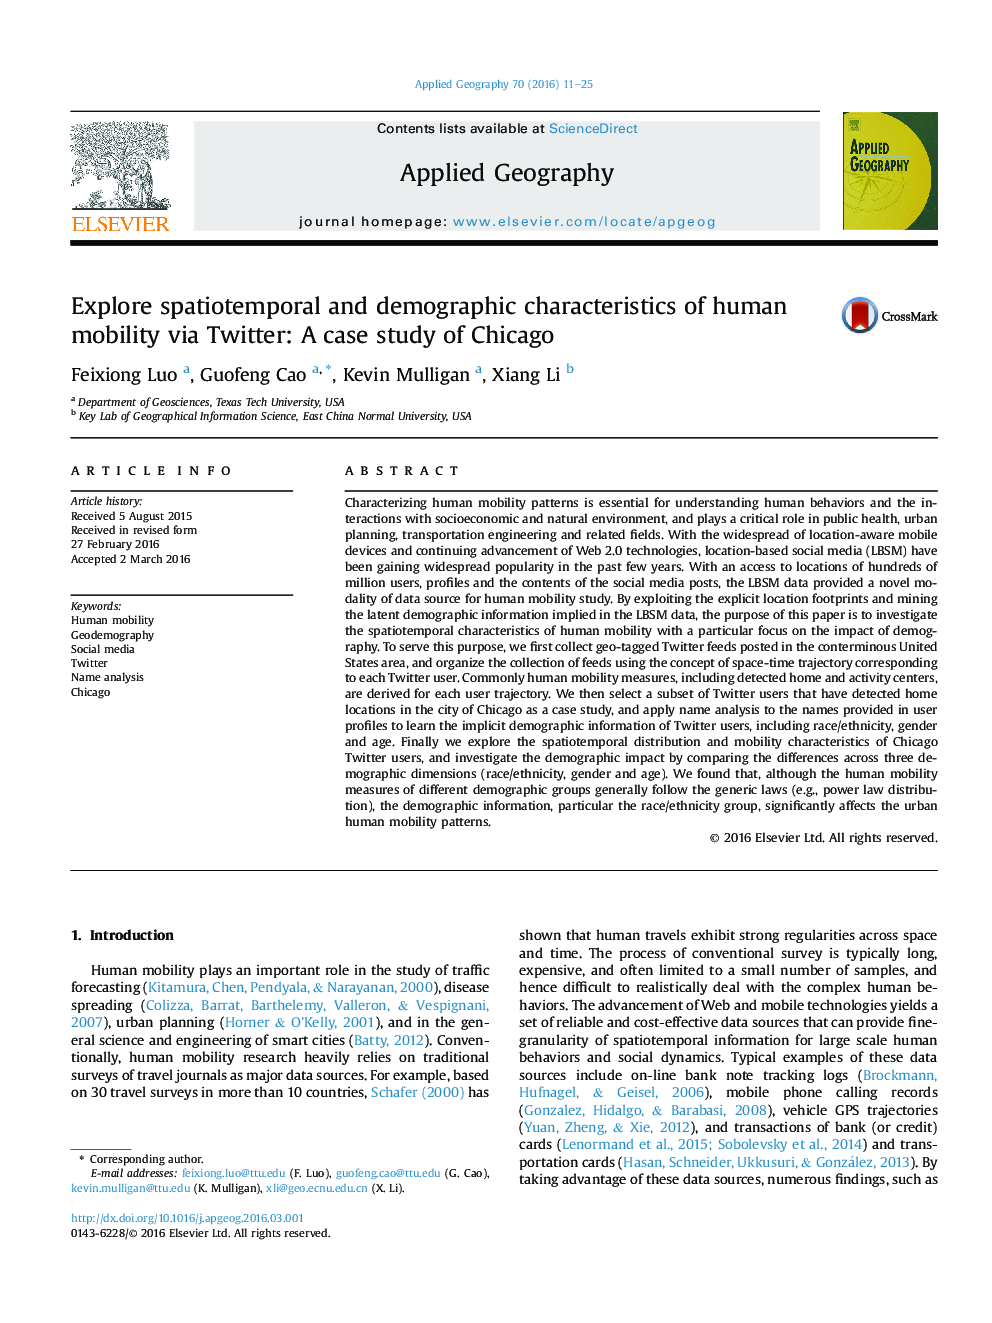 کشف خصوصیات فضایی و جمعیت شناختی تحرک از طریق توییتر: مطالعه موردی شیکاگو 